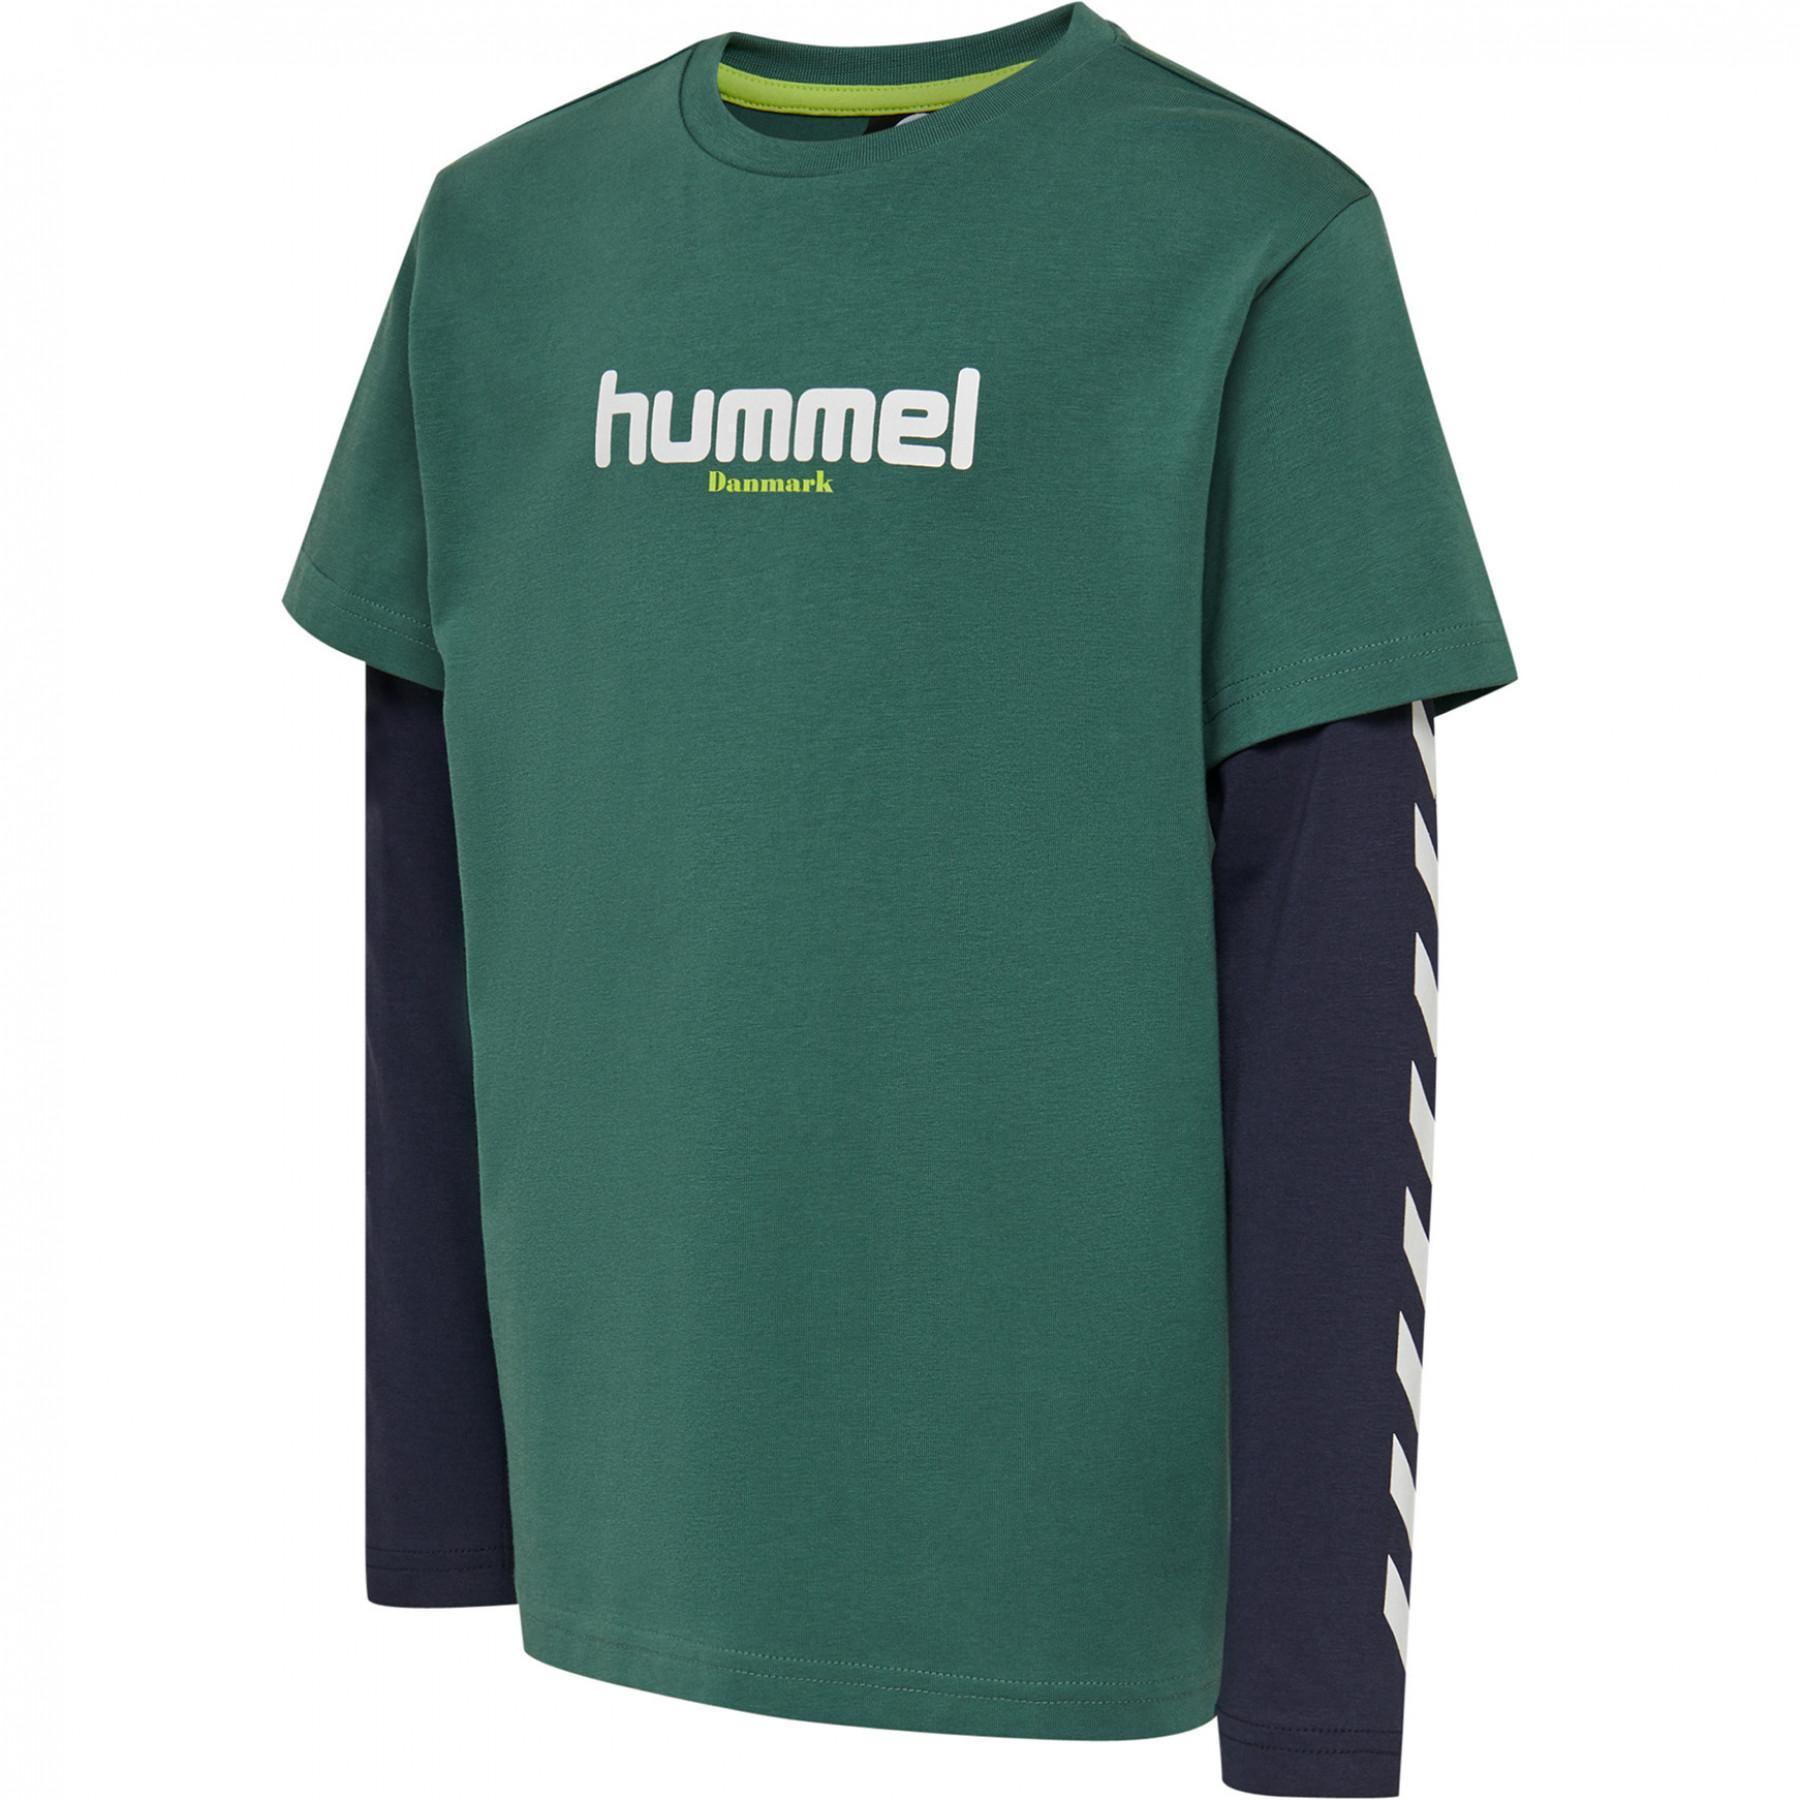 T-shirt long sleeves child Hummel hmlhikaro